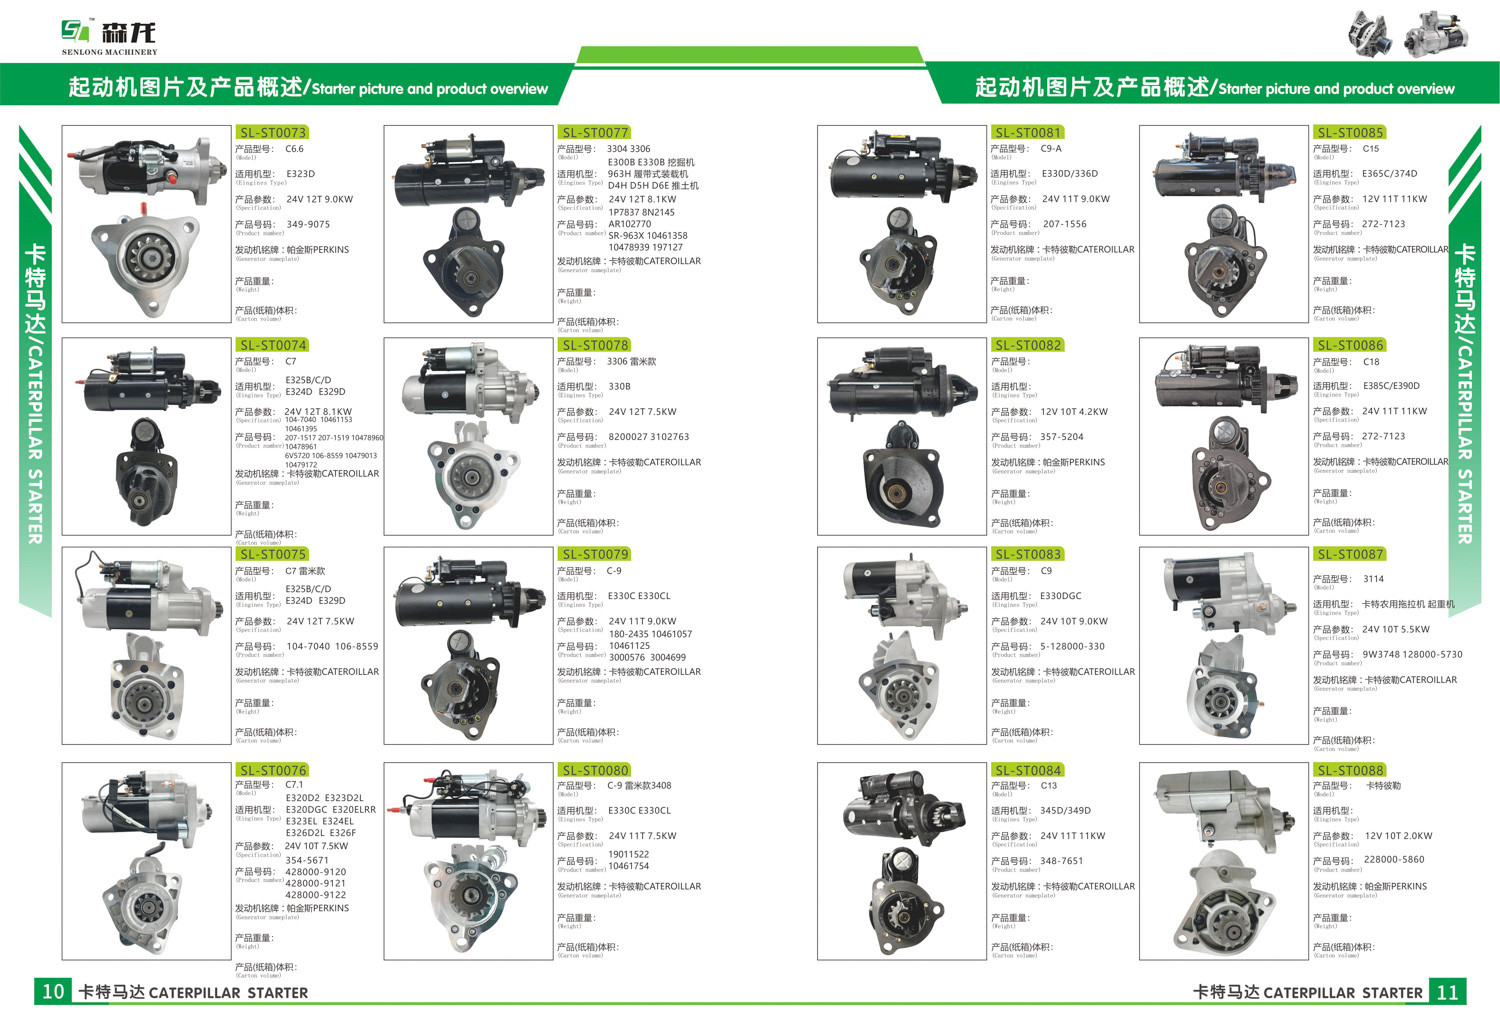 12V 9T 3.0KW Starter Motor For 35258660 0001218168 9000331432